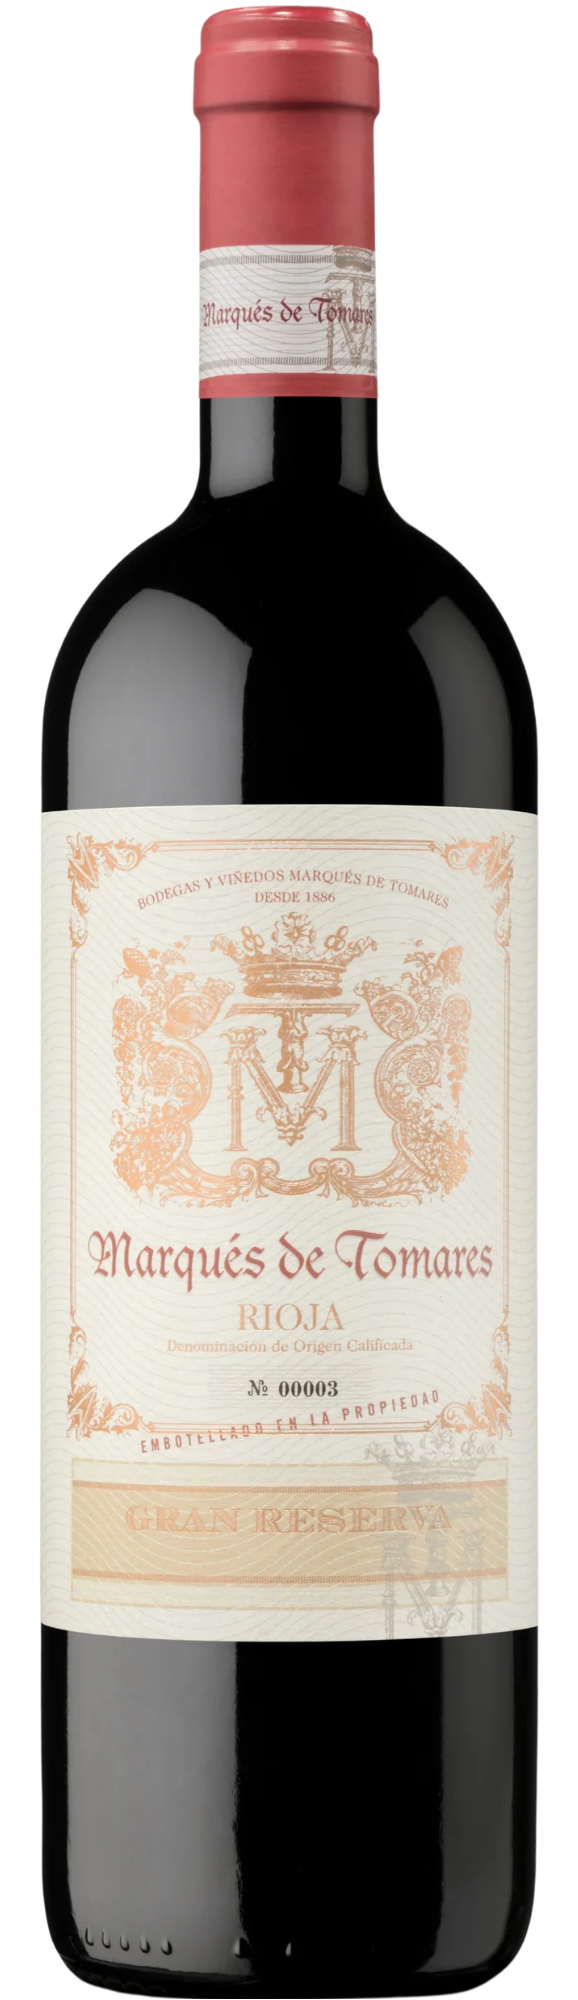 Marqués de Tomares Rioja Gran Reserva 2015